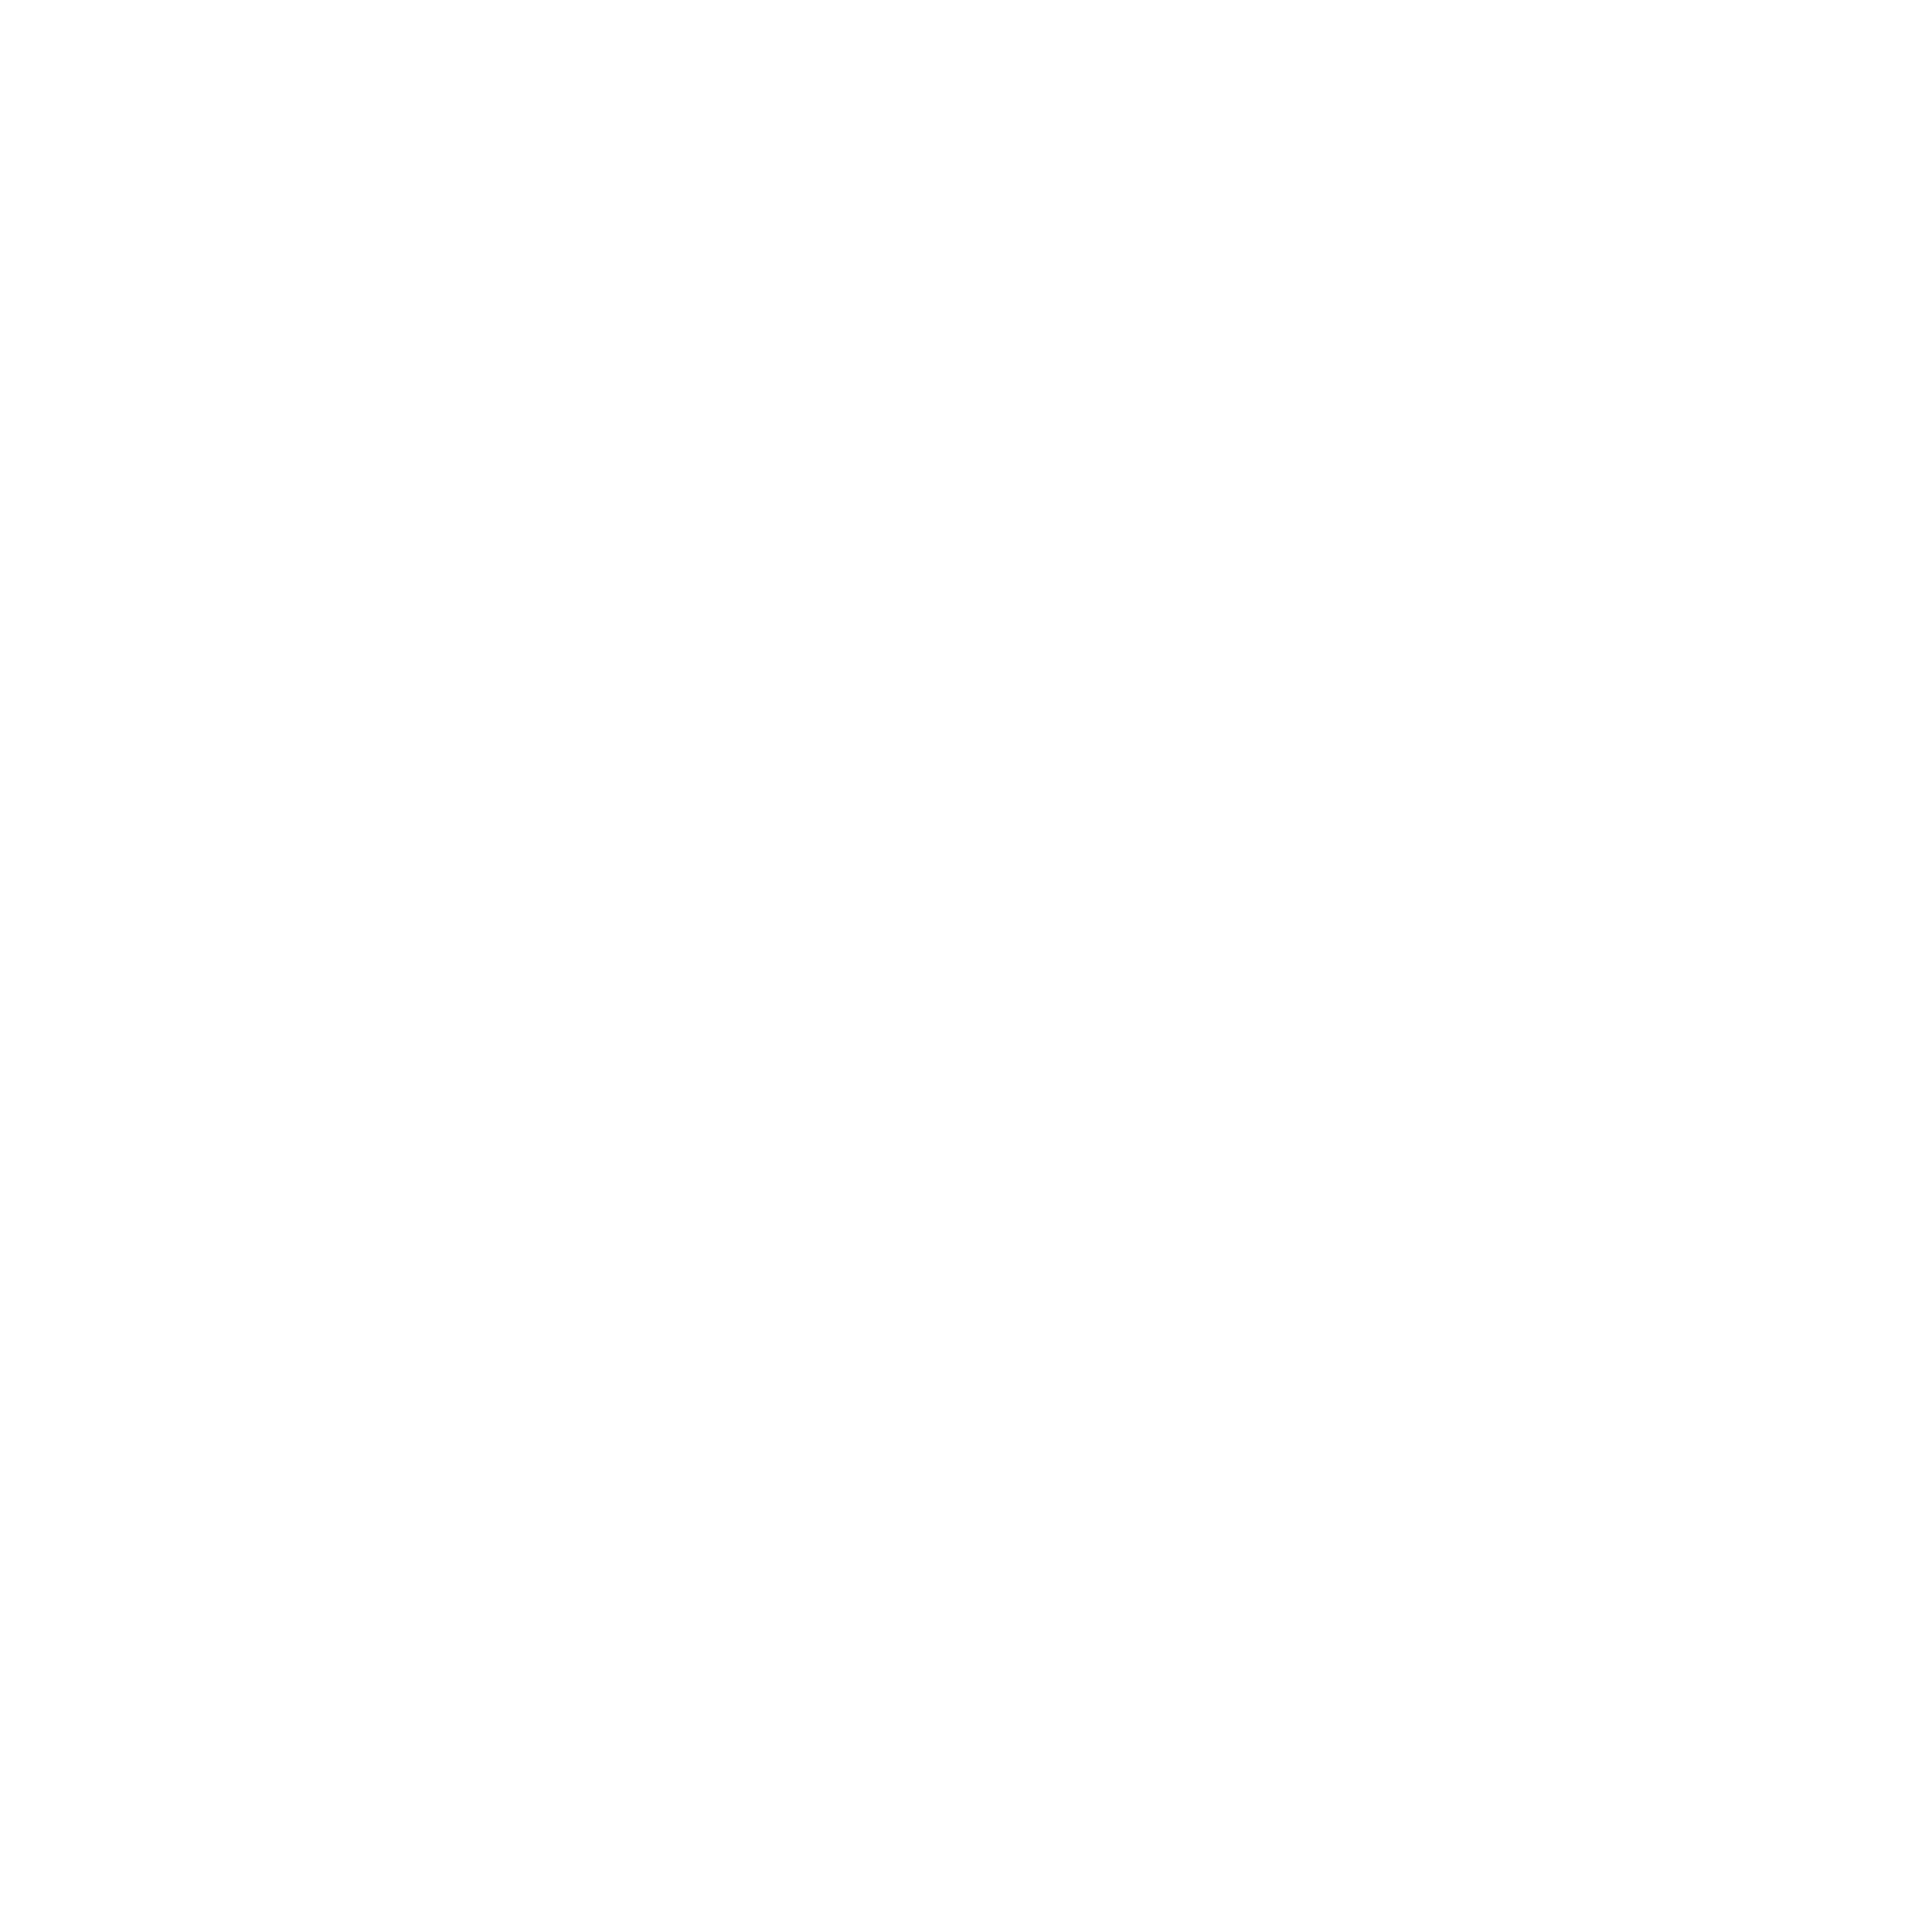 <strong>Vente</strong><br>Nous vous offrons toute la gamme de camping-cars, de van et de caravanes de nos 4 marques maison. L'avantage chez nous, c'est qu'en raison de notre grand choix de véhicules de location, vous pouvez déjà tester de nombreux modèles avant de les acheter.</br>
